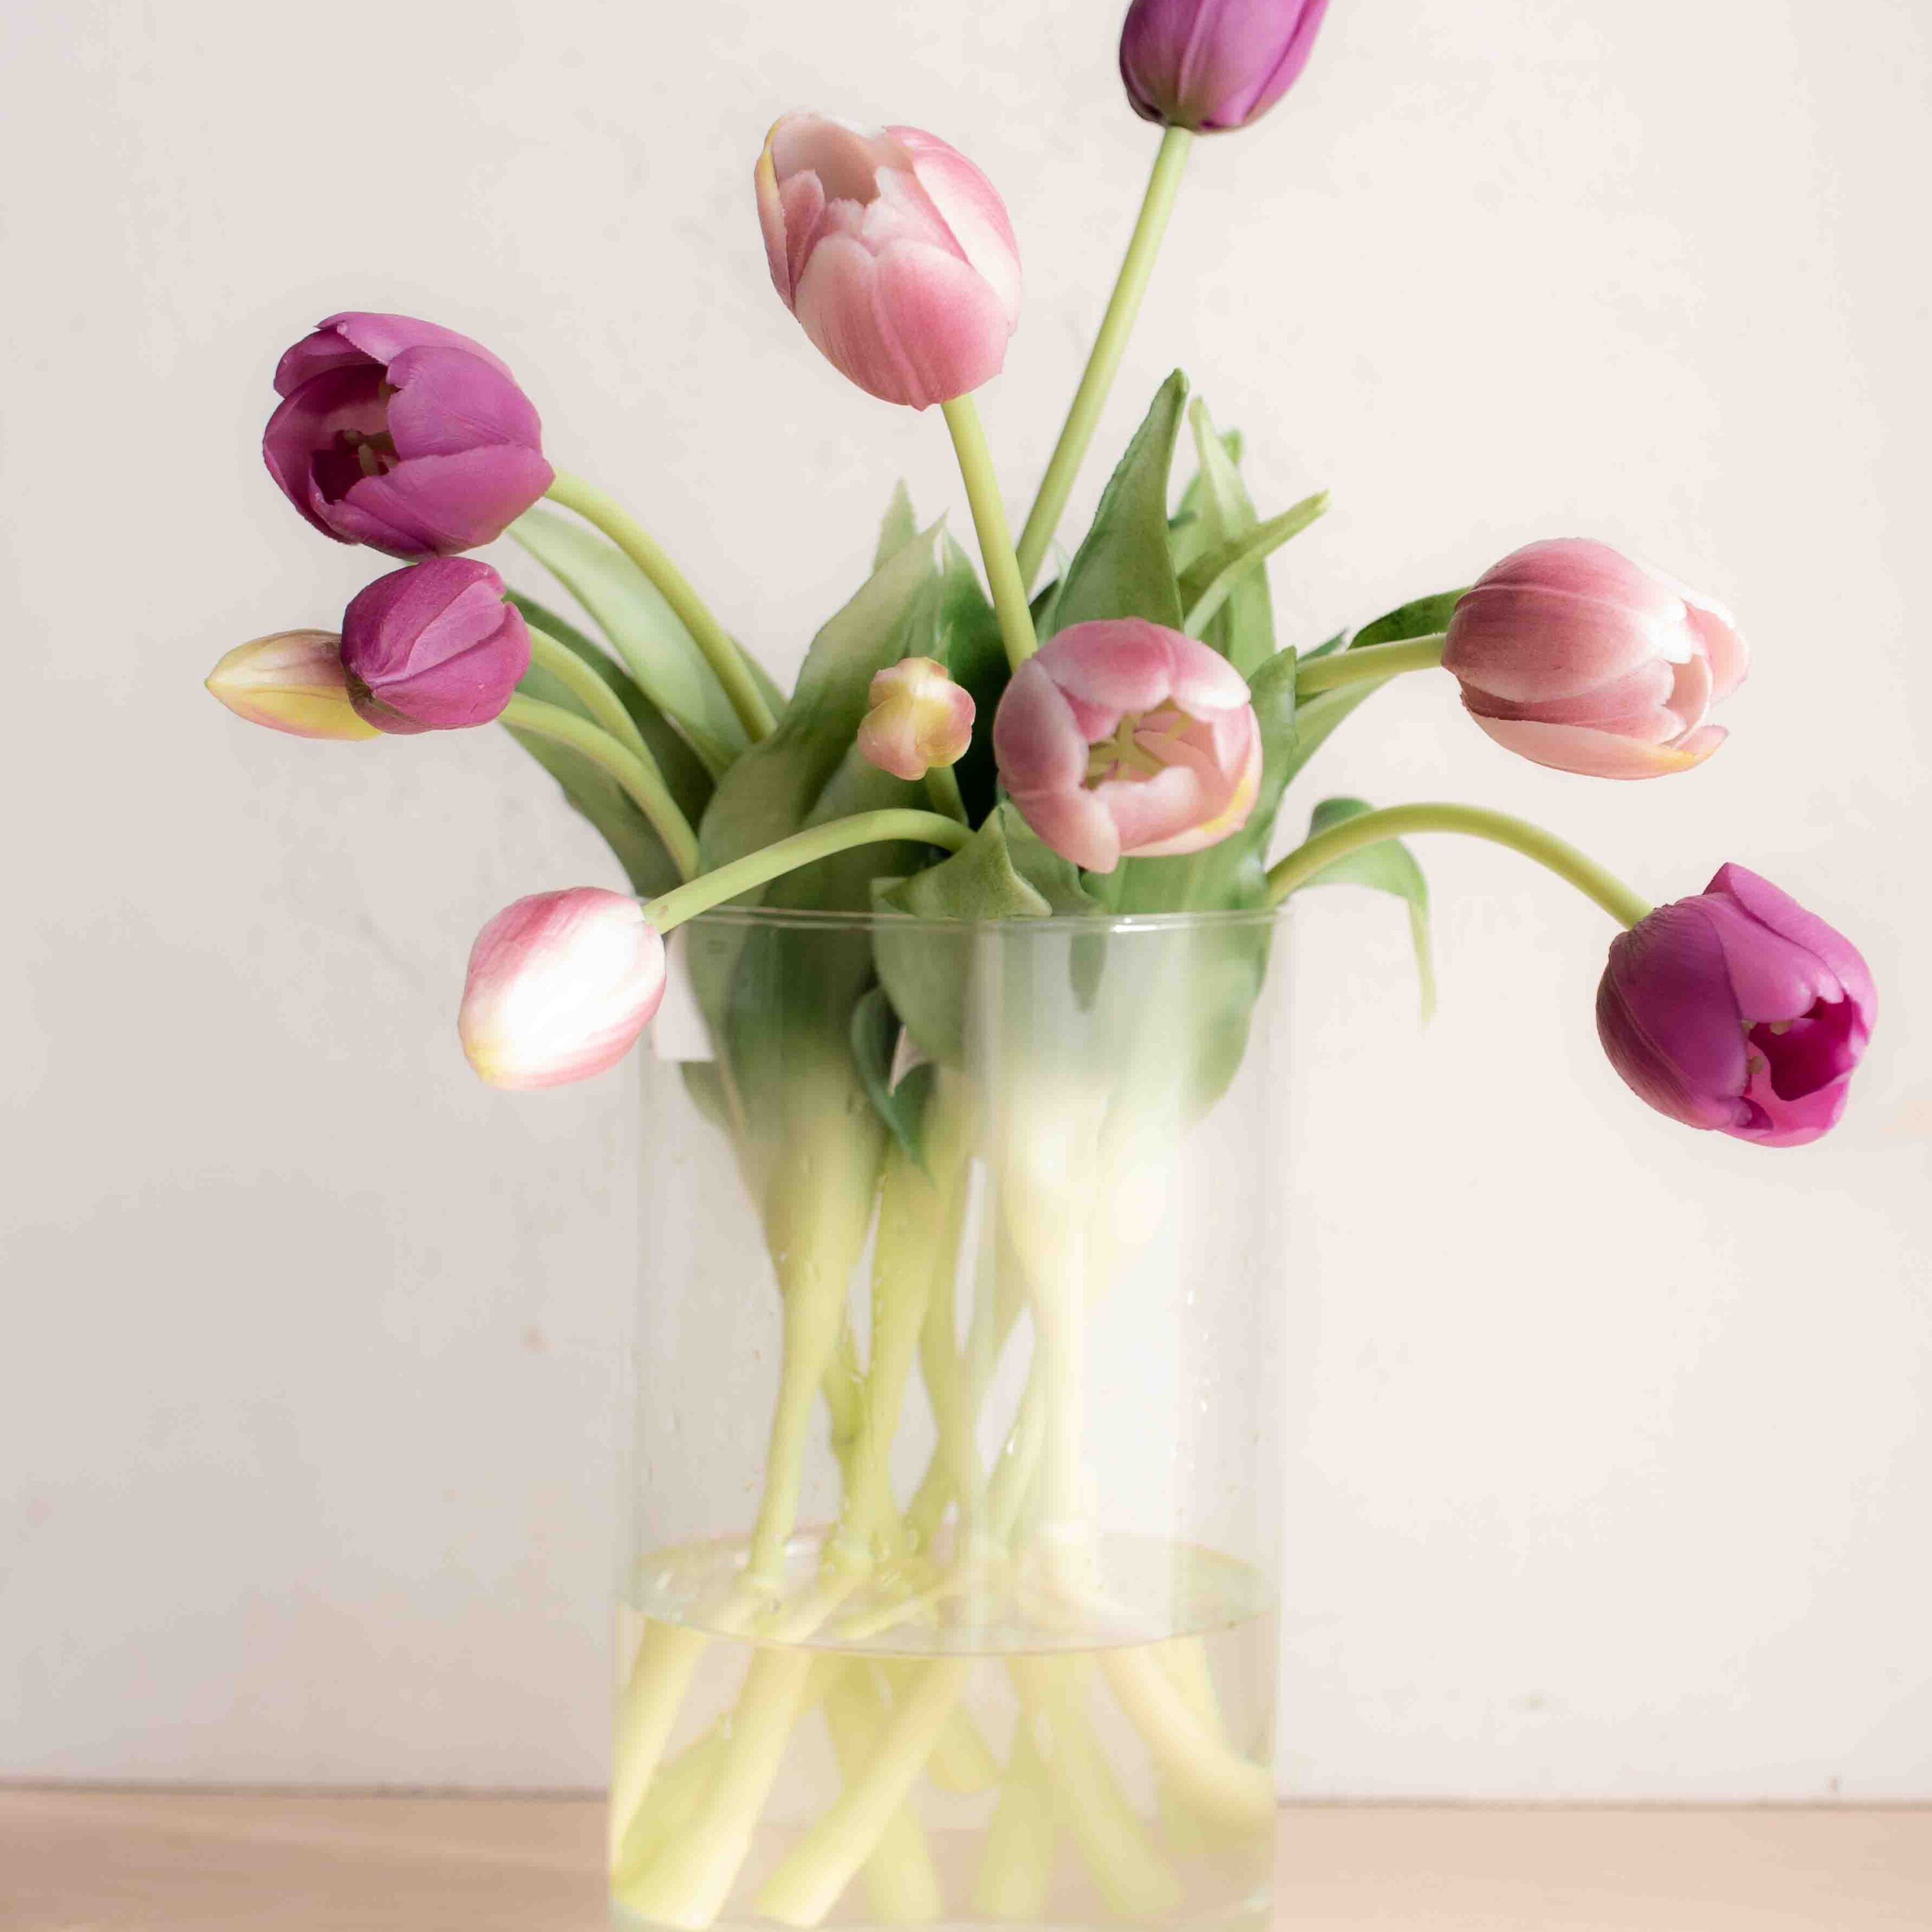 bellissimi tulipani real touch, estremamente realistici colore viola